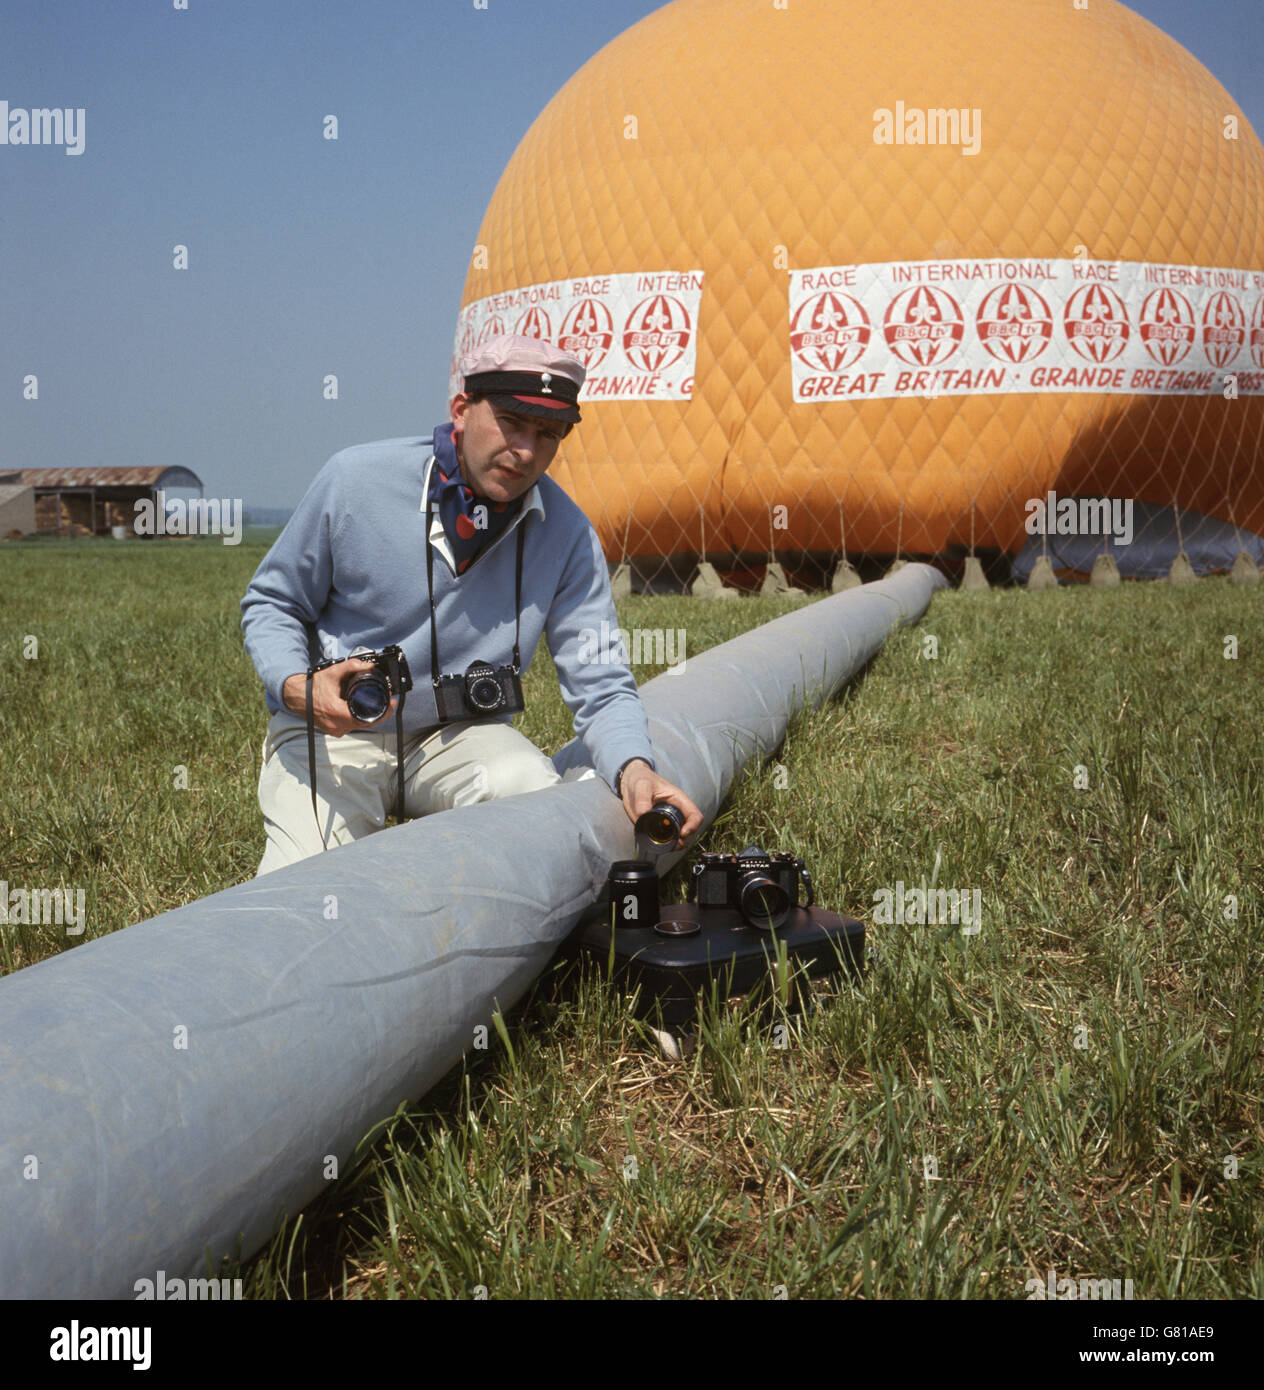 Ein Ballonfahrer bereitet seine Kameras für das Internationale Ballonrennen vor, das von der BBC organisiert wurde. Stockfoto